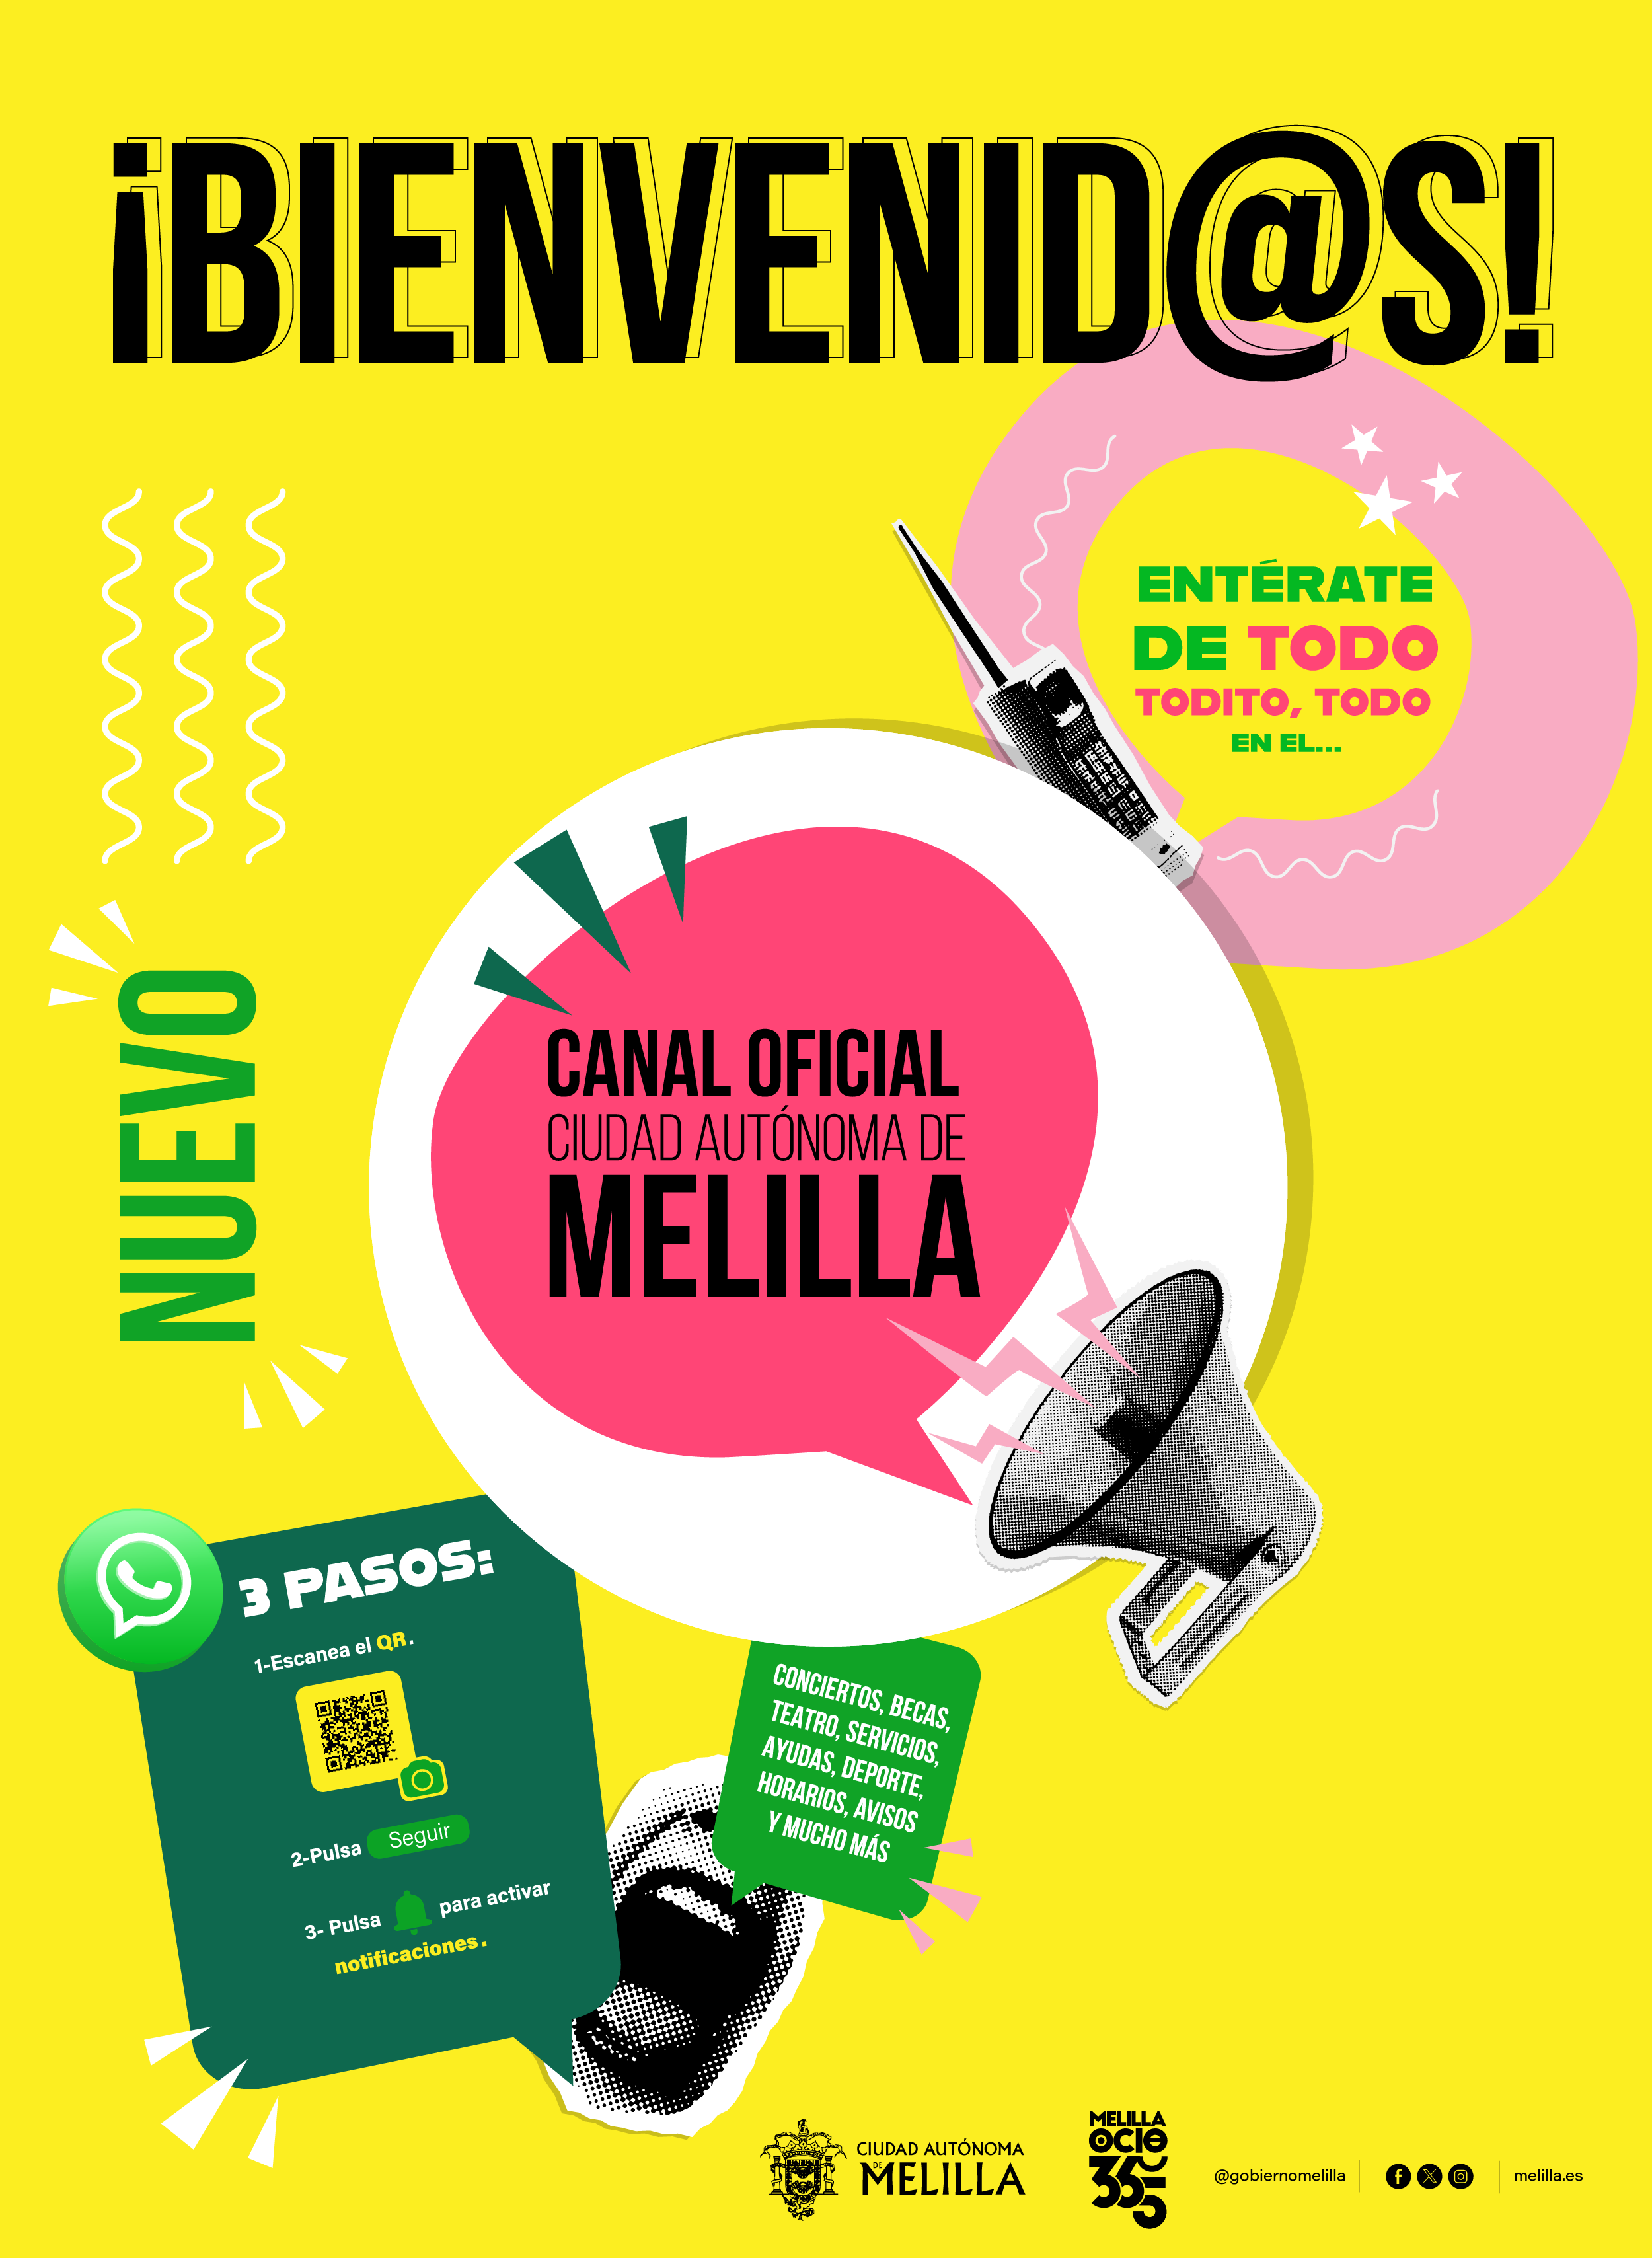 Cartel Campaa del Canal Oficial de WhatsApp de la Ciudad Autnoma de Melilla